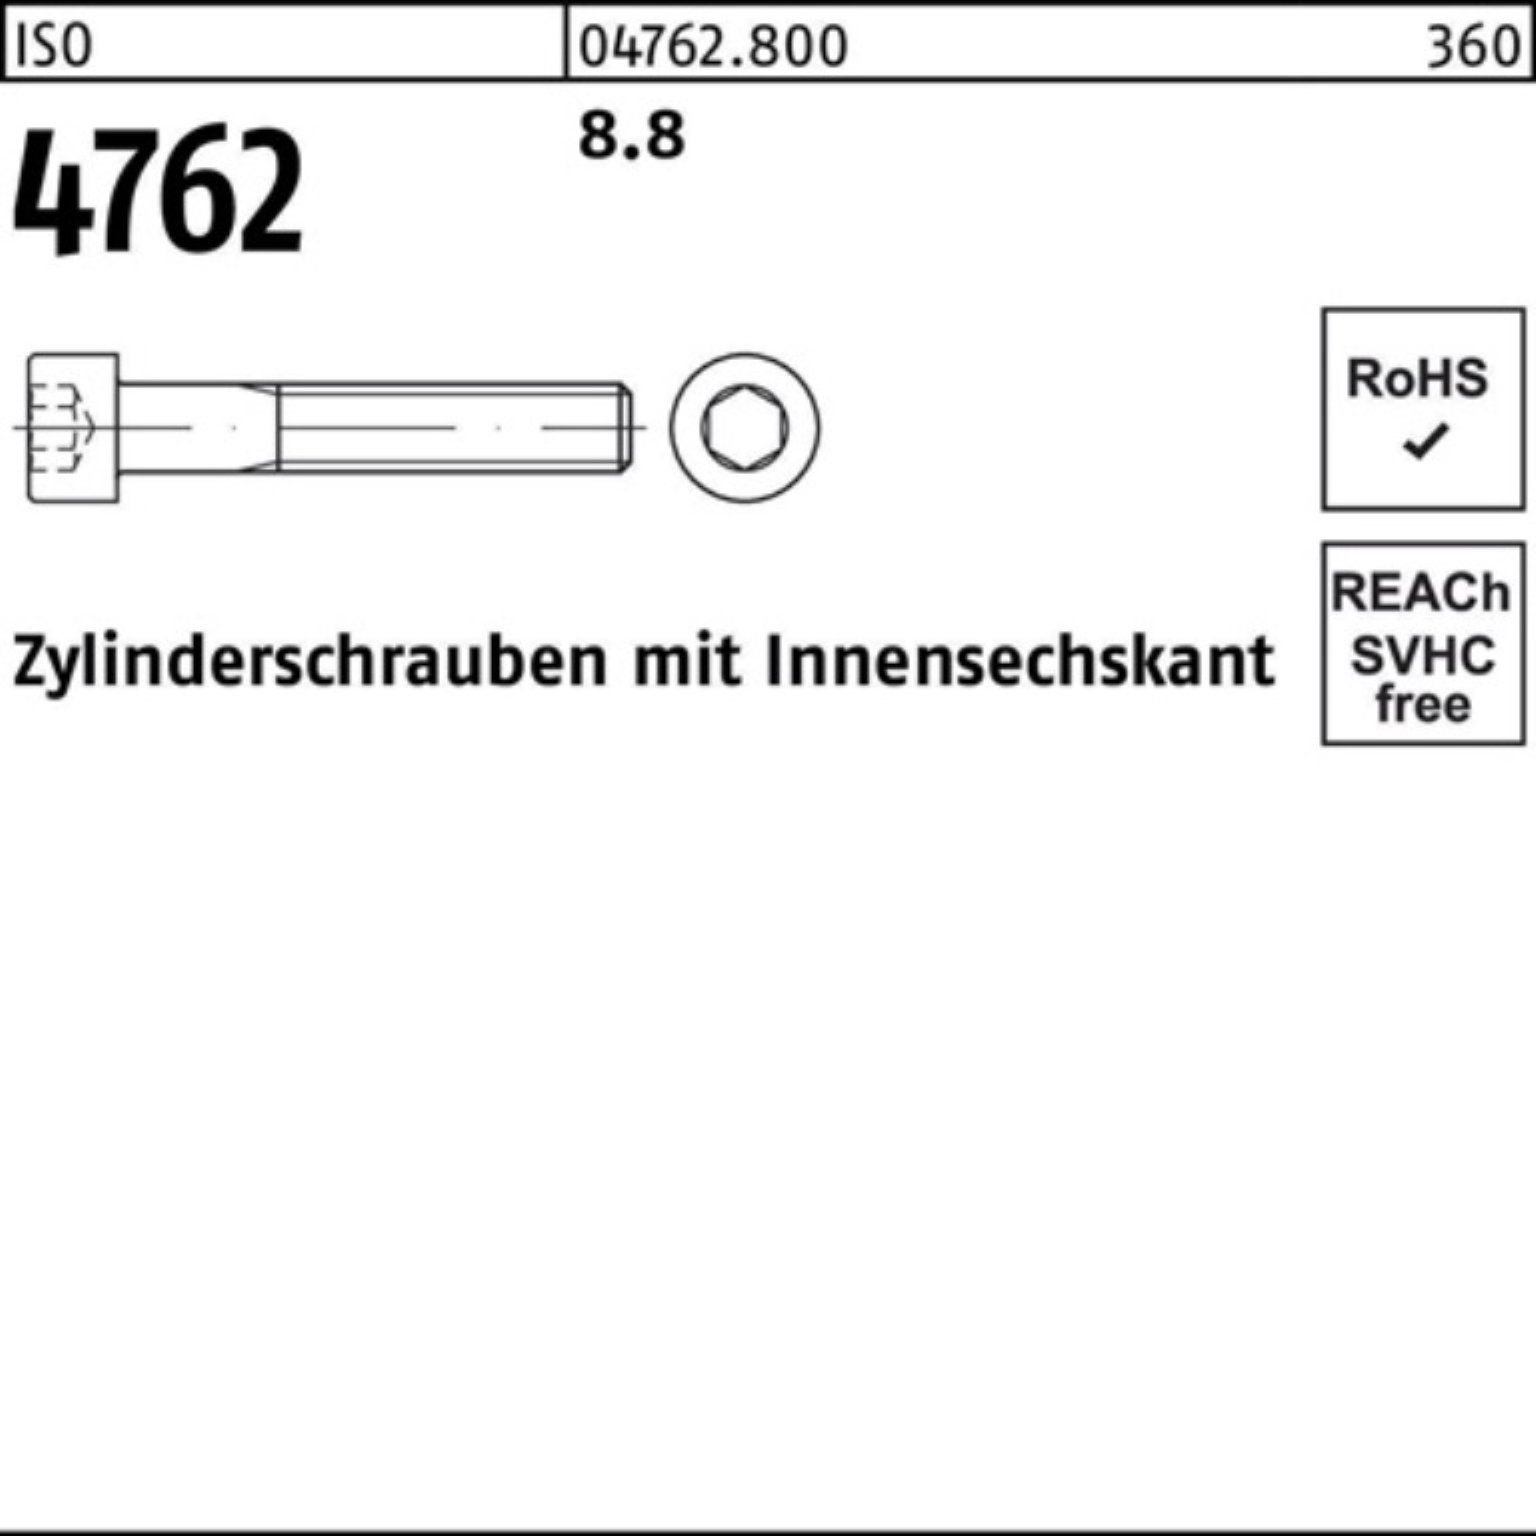 Reyher Zylinderschraube I ISO Innen-6kt 100er 4762 M22x 1 Stück 300 Pack 8.8 Zylinderschraube